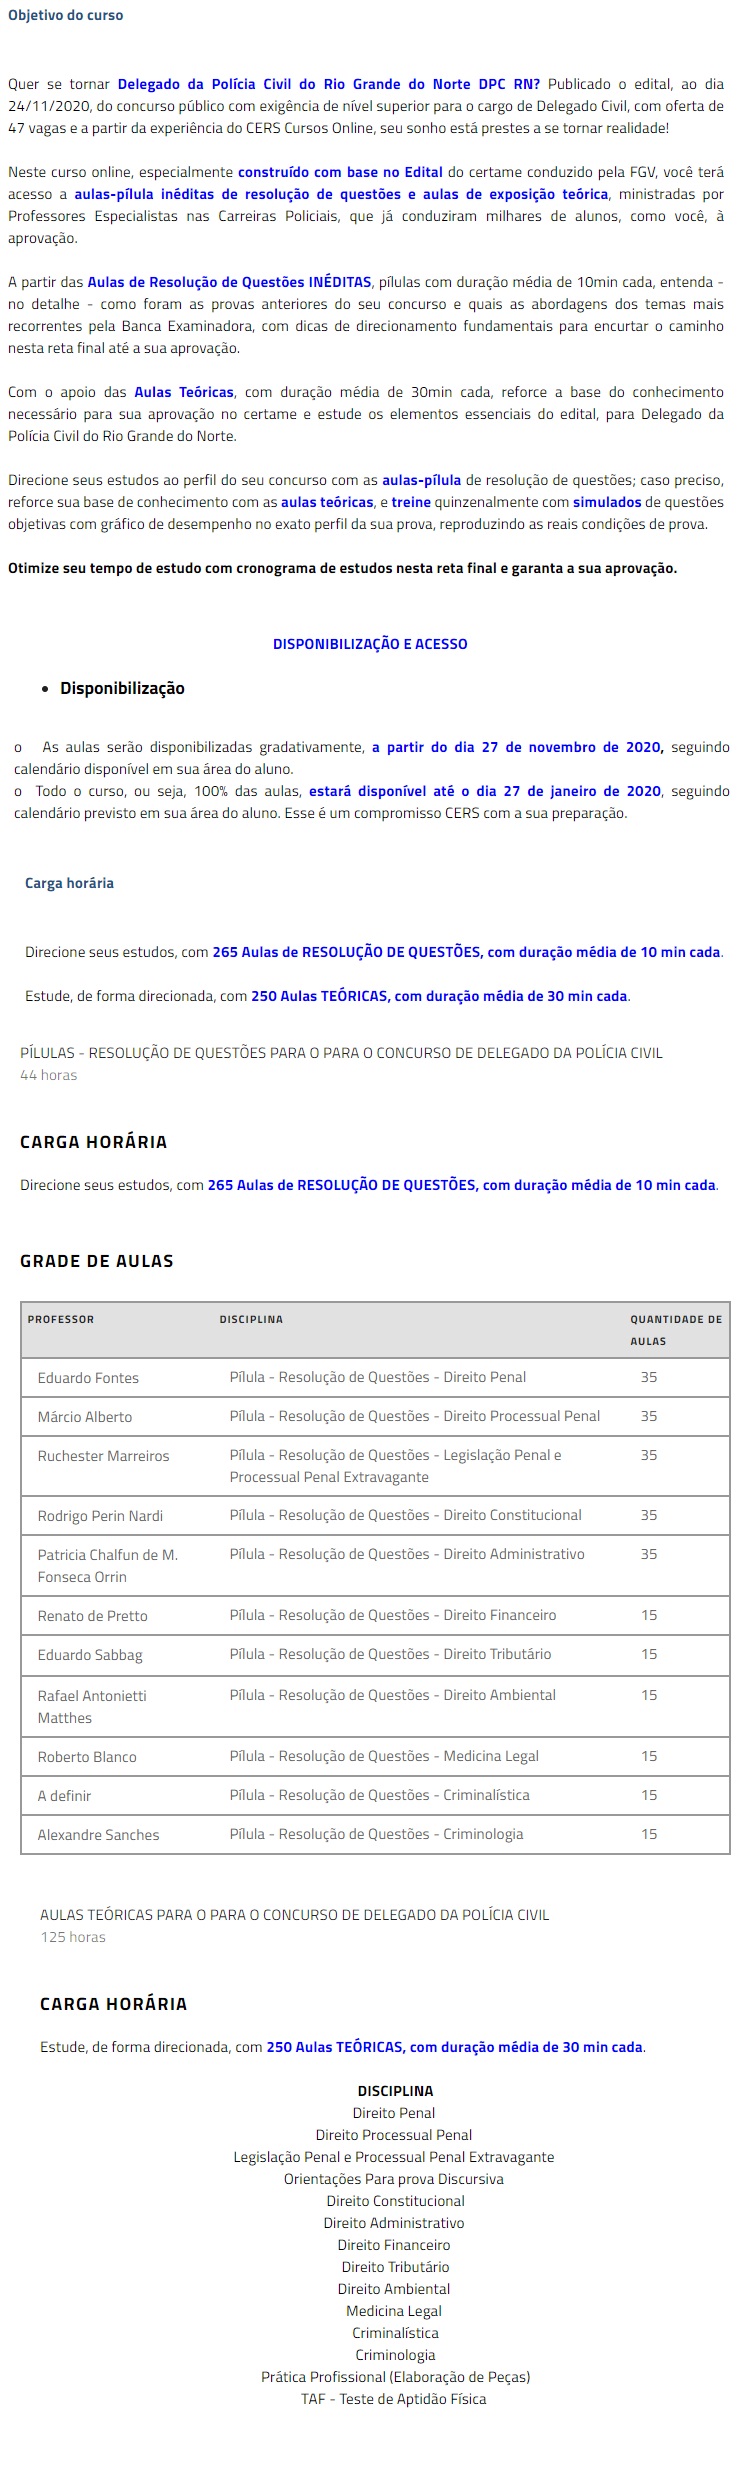 PC RN - Delegado - RETA FINAL (PÓS EDITAL) ( 2020.2)Polícia Civil do Rio Grande do Norte 4